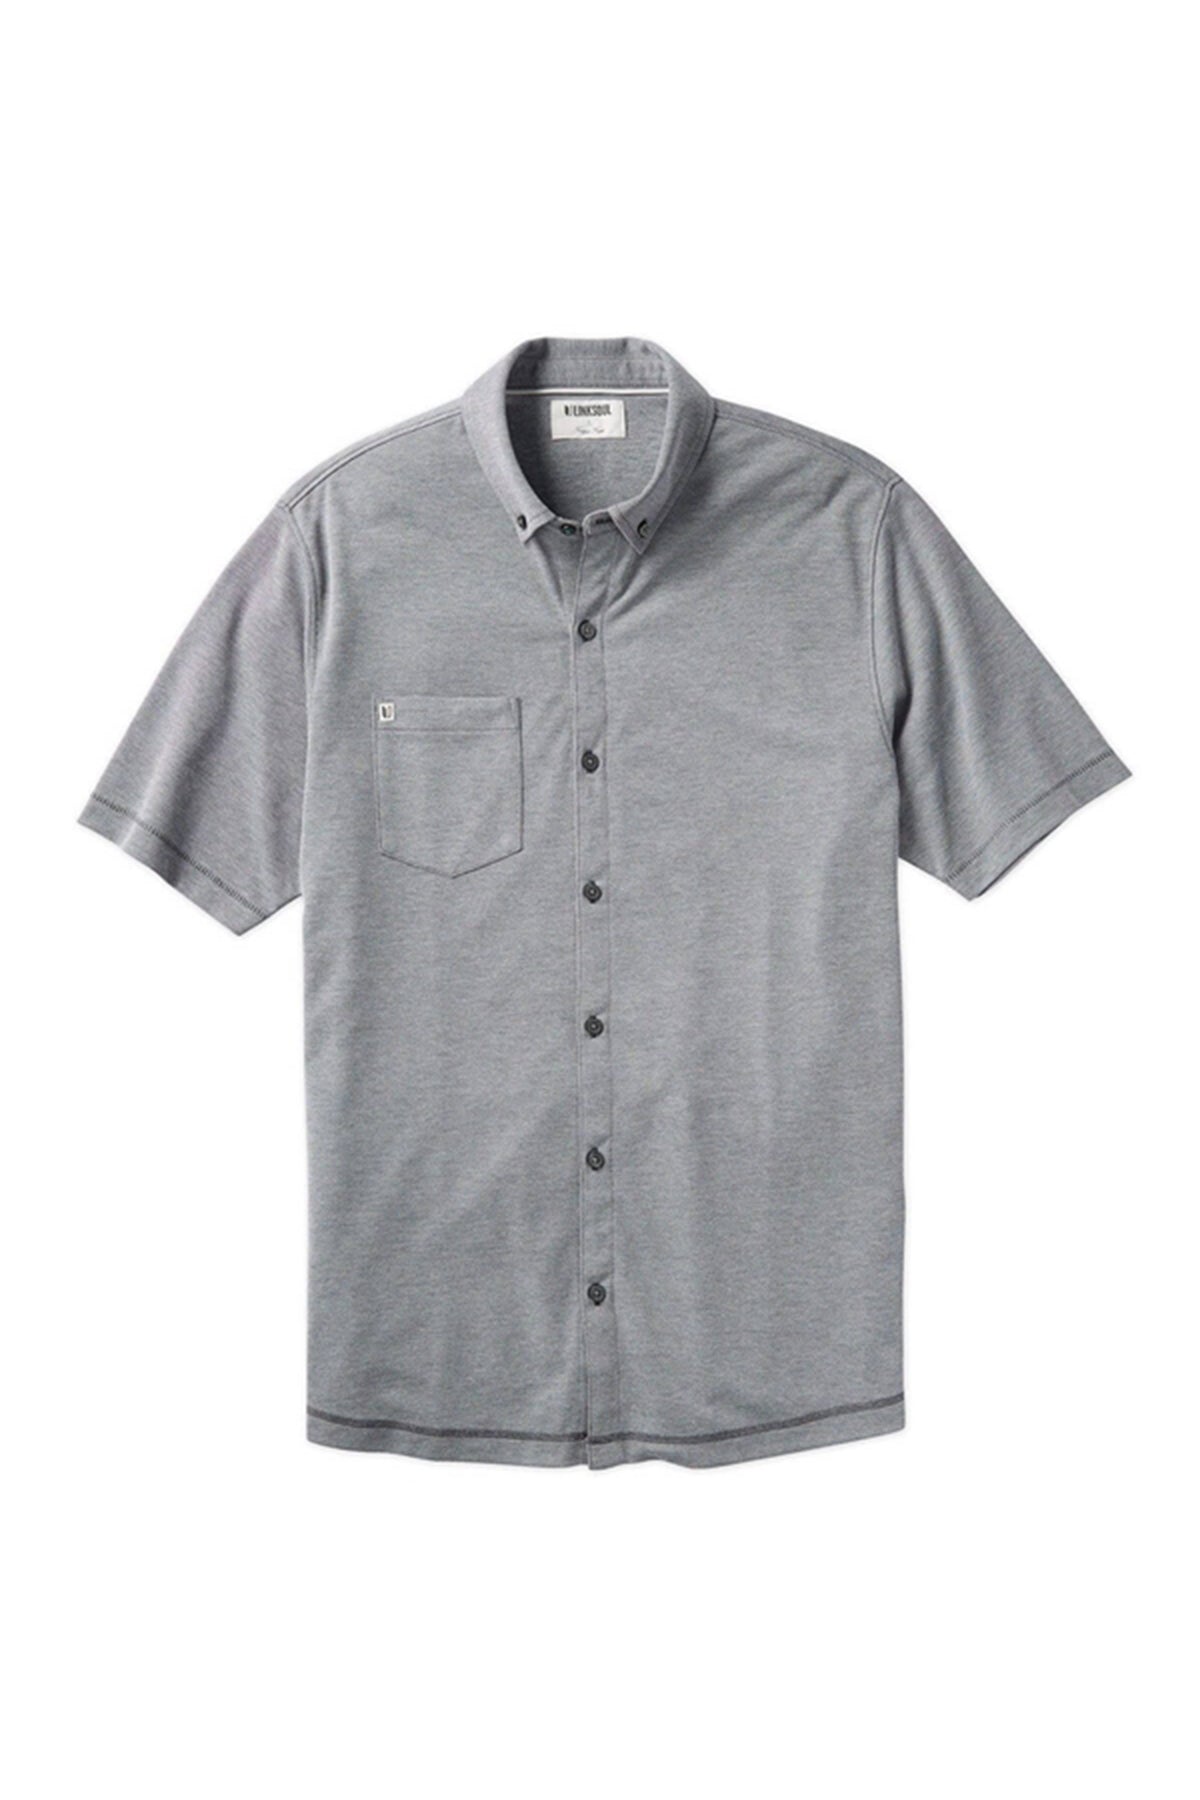 Linksoul Mens Full Button Short Sleeve Shirt LS1313 Grey